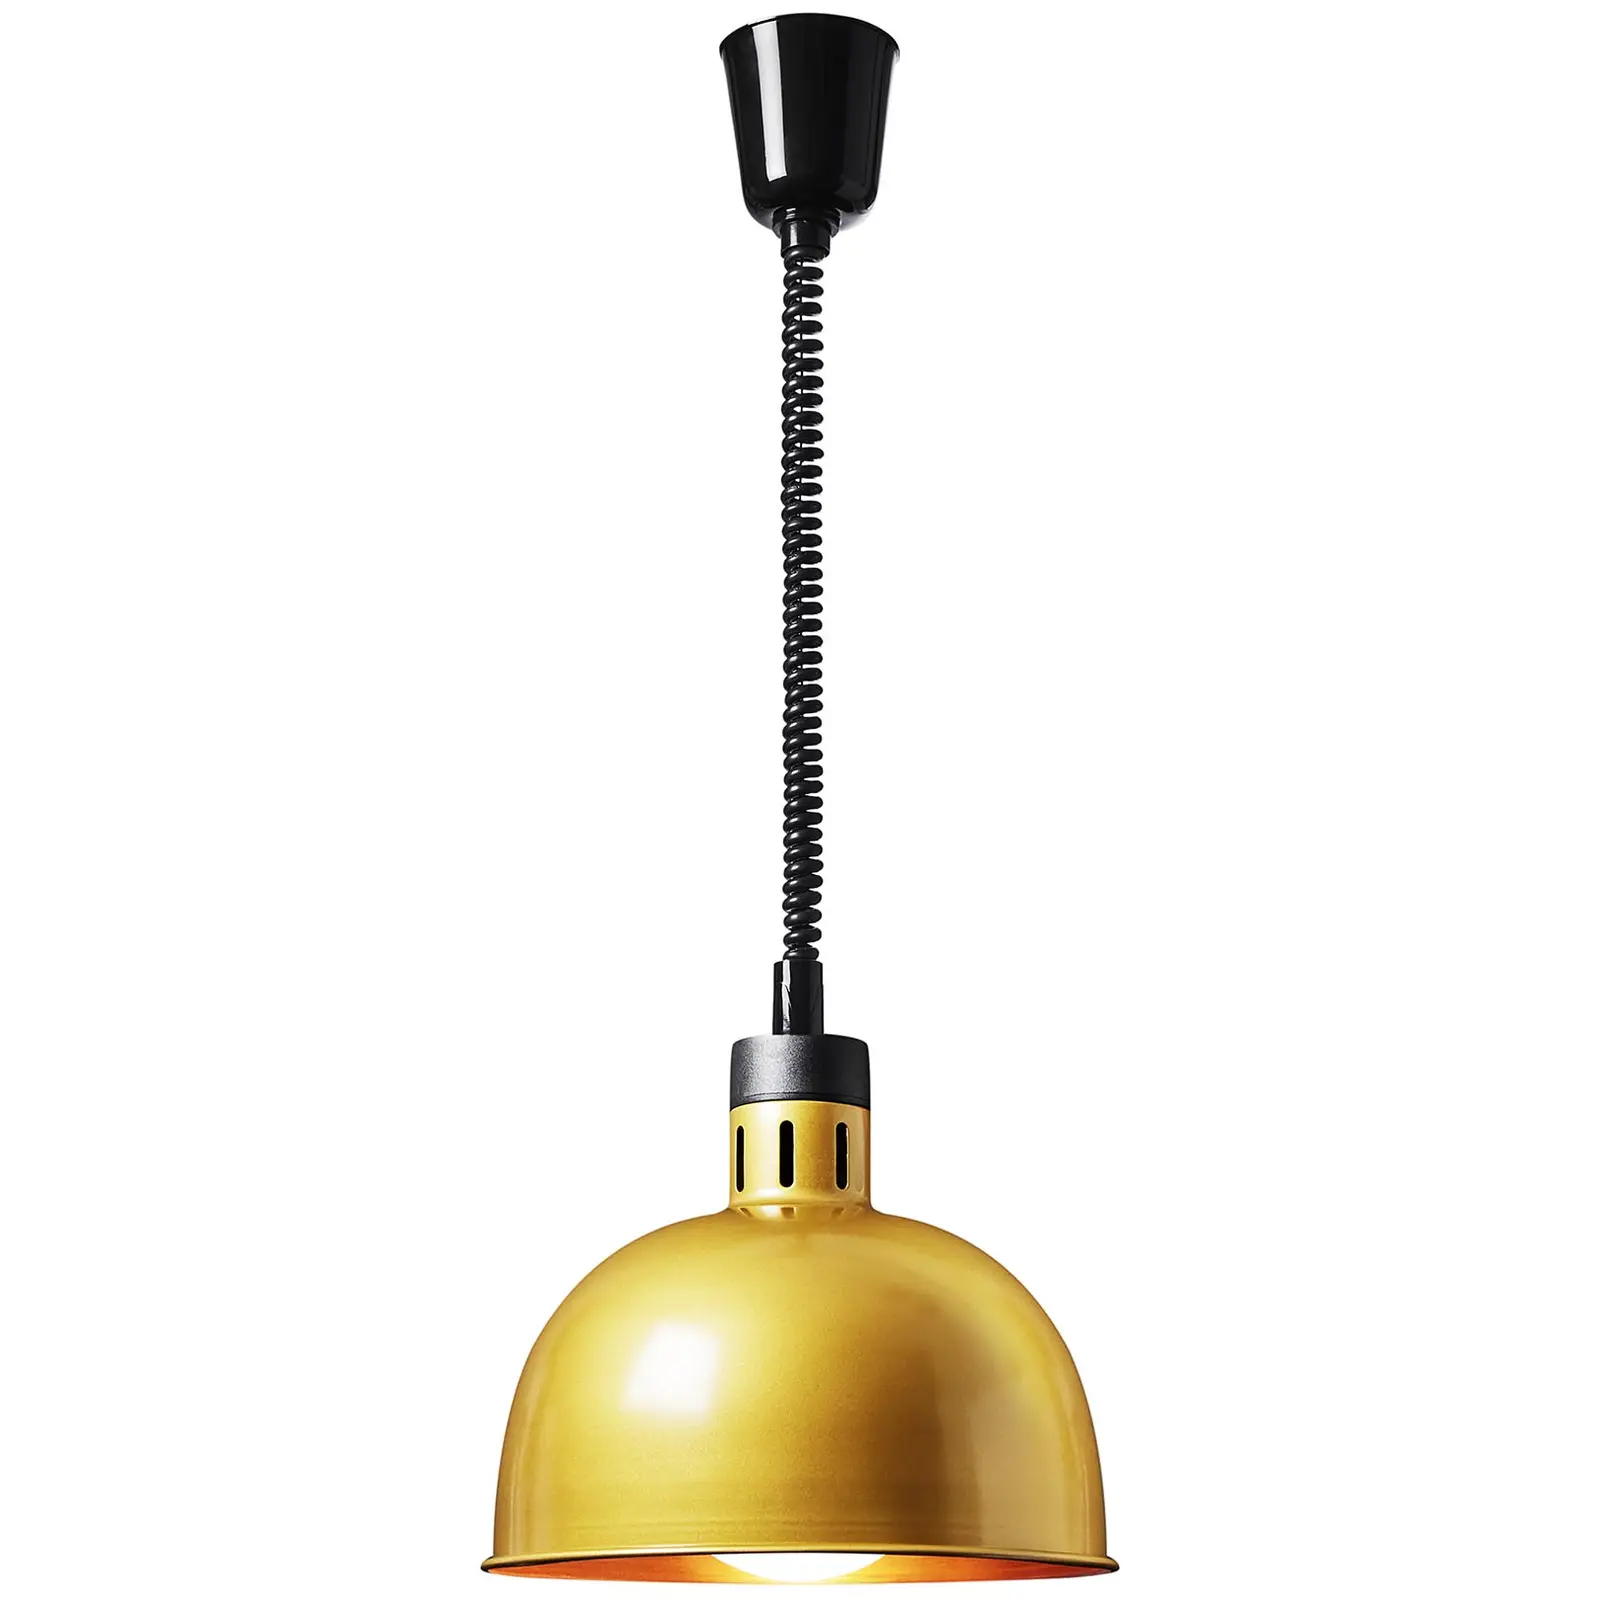 Lampe chauffante - Or pâle - 29 x 29 x 29.5 cm - Royal Catering - Acier